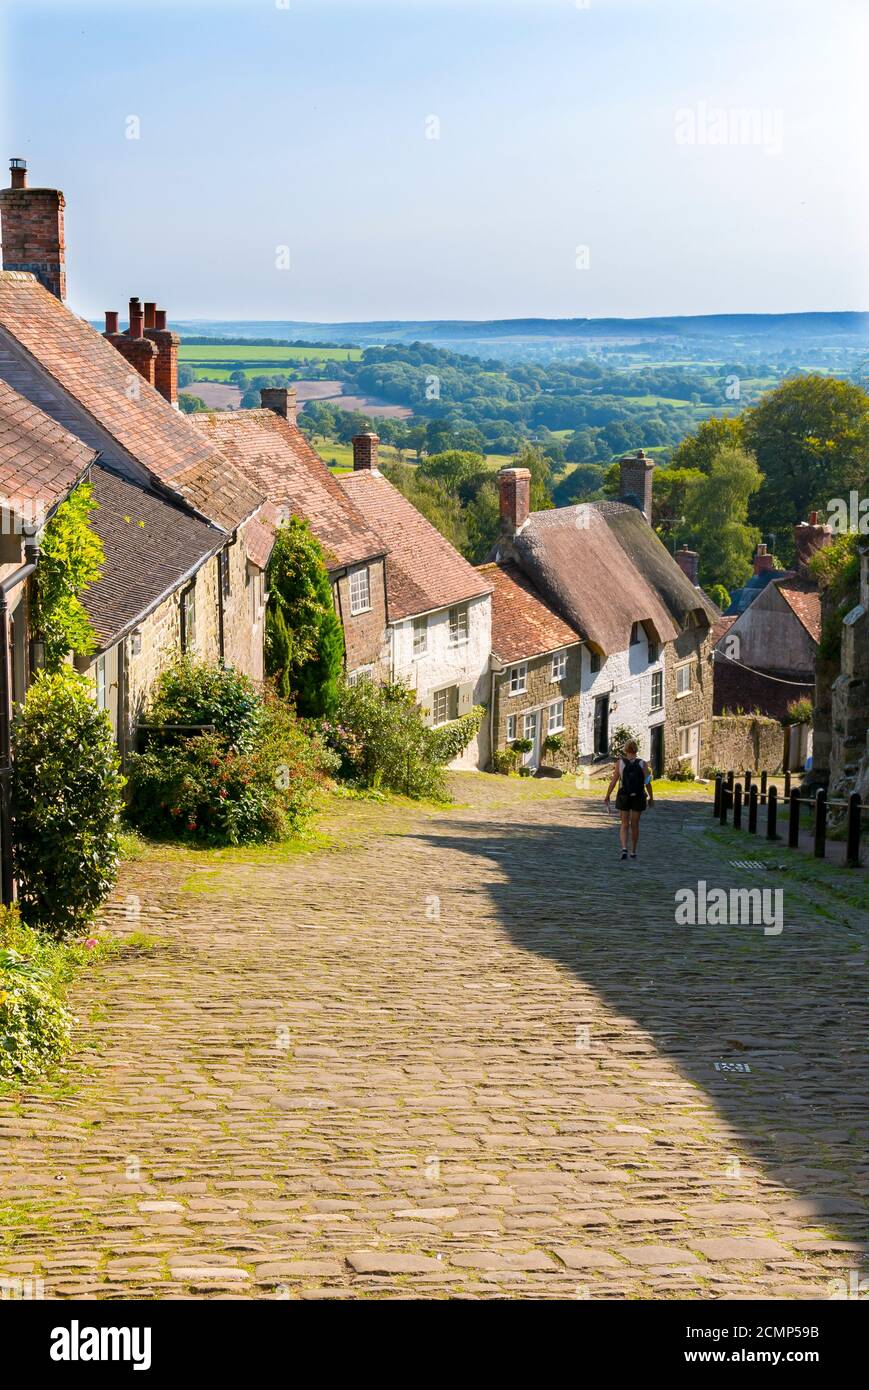 Gold Hill è una ripida strada acciottolata nella città di Shaftesbury, nella contea inglese del Dorset. La vista si affaccia in basso dalla cima della città. Foto Stock